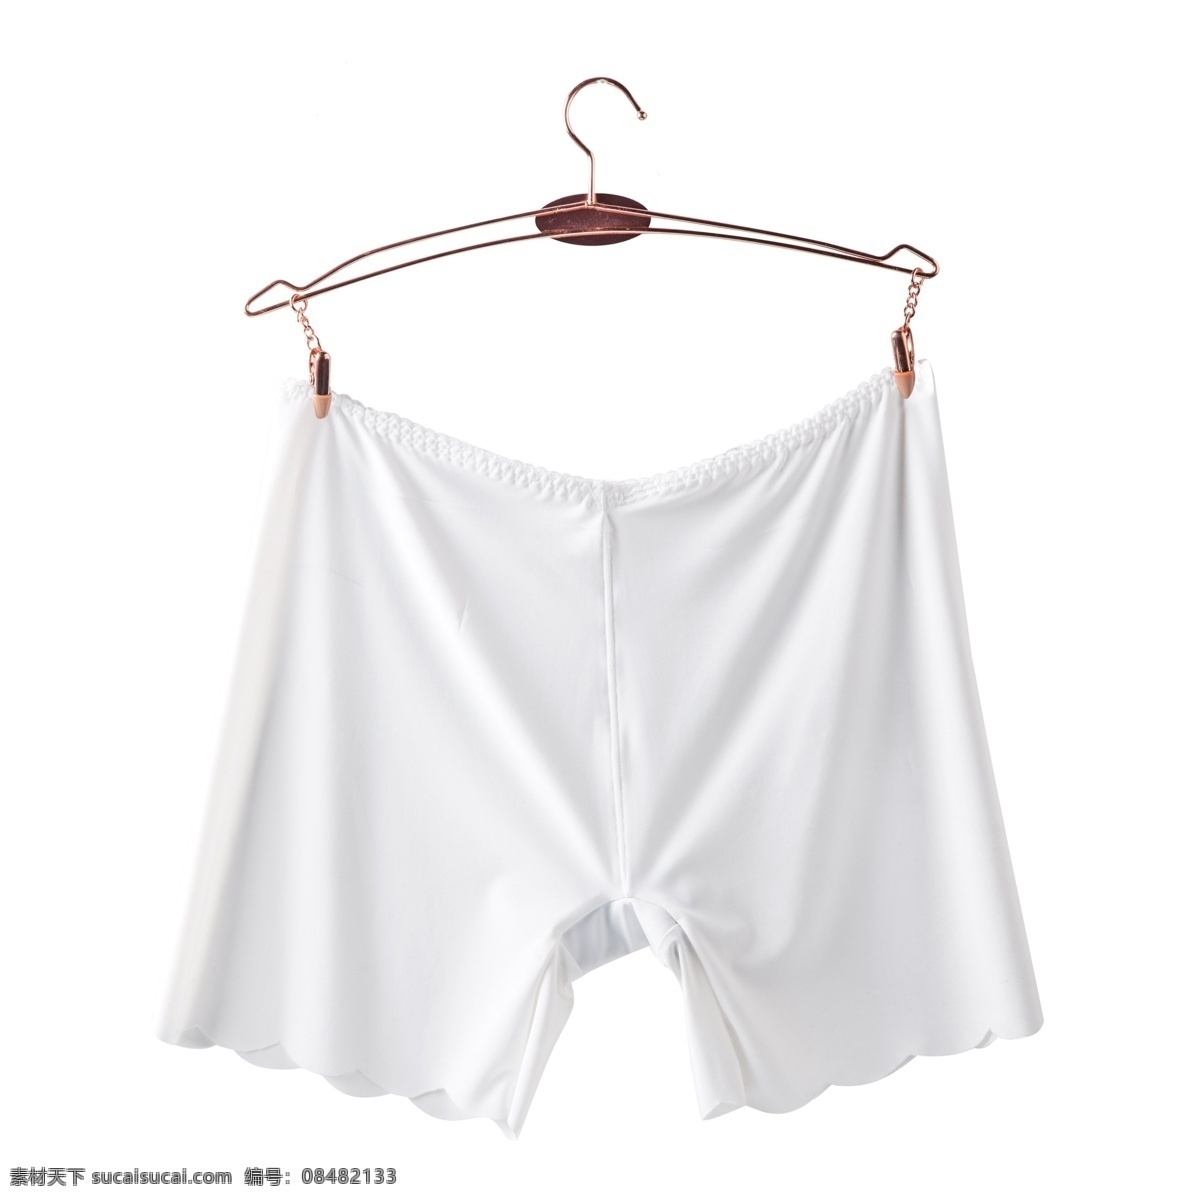 白色 晾晒 短裤 元素 创意 服装 金属夹子 固定 闪光 高光 纹理 棉质 衣服 钩子 悬挂